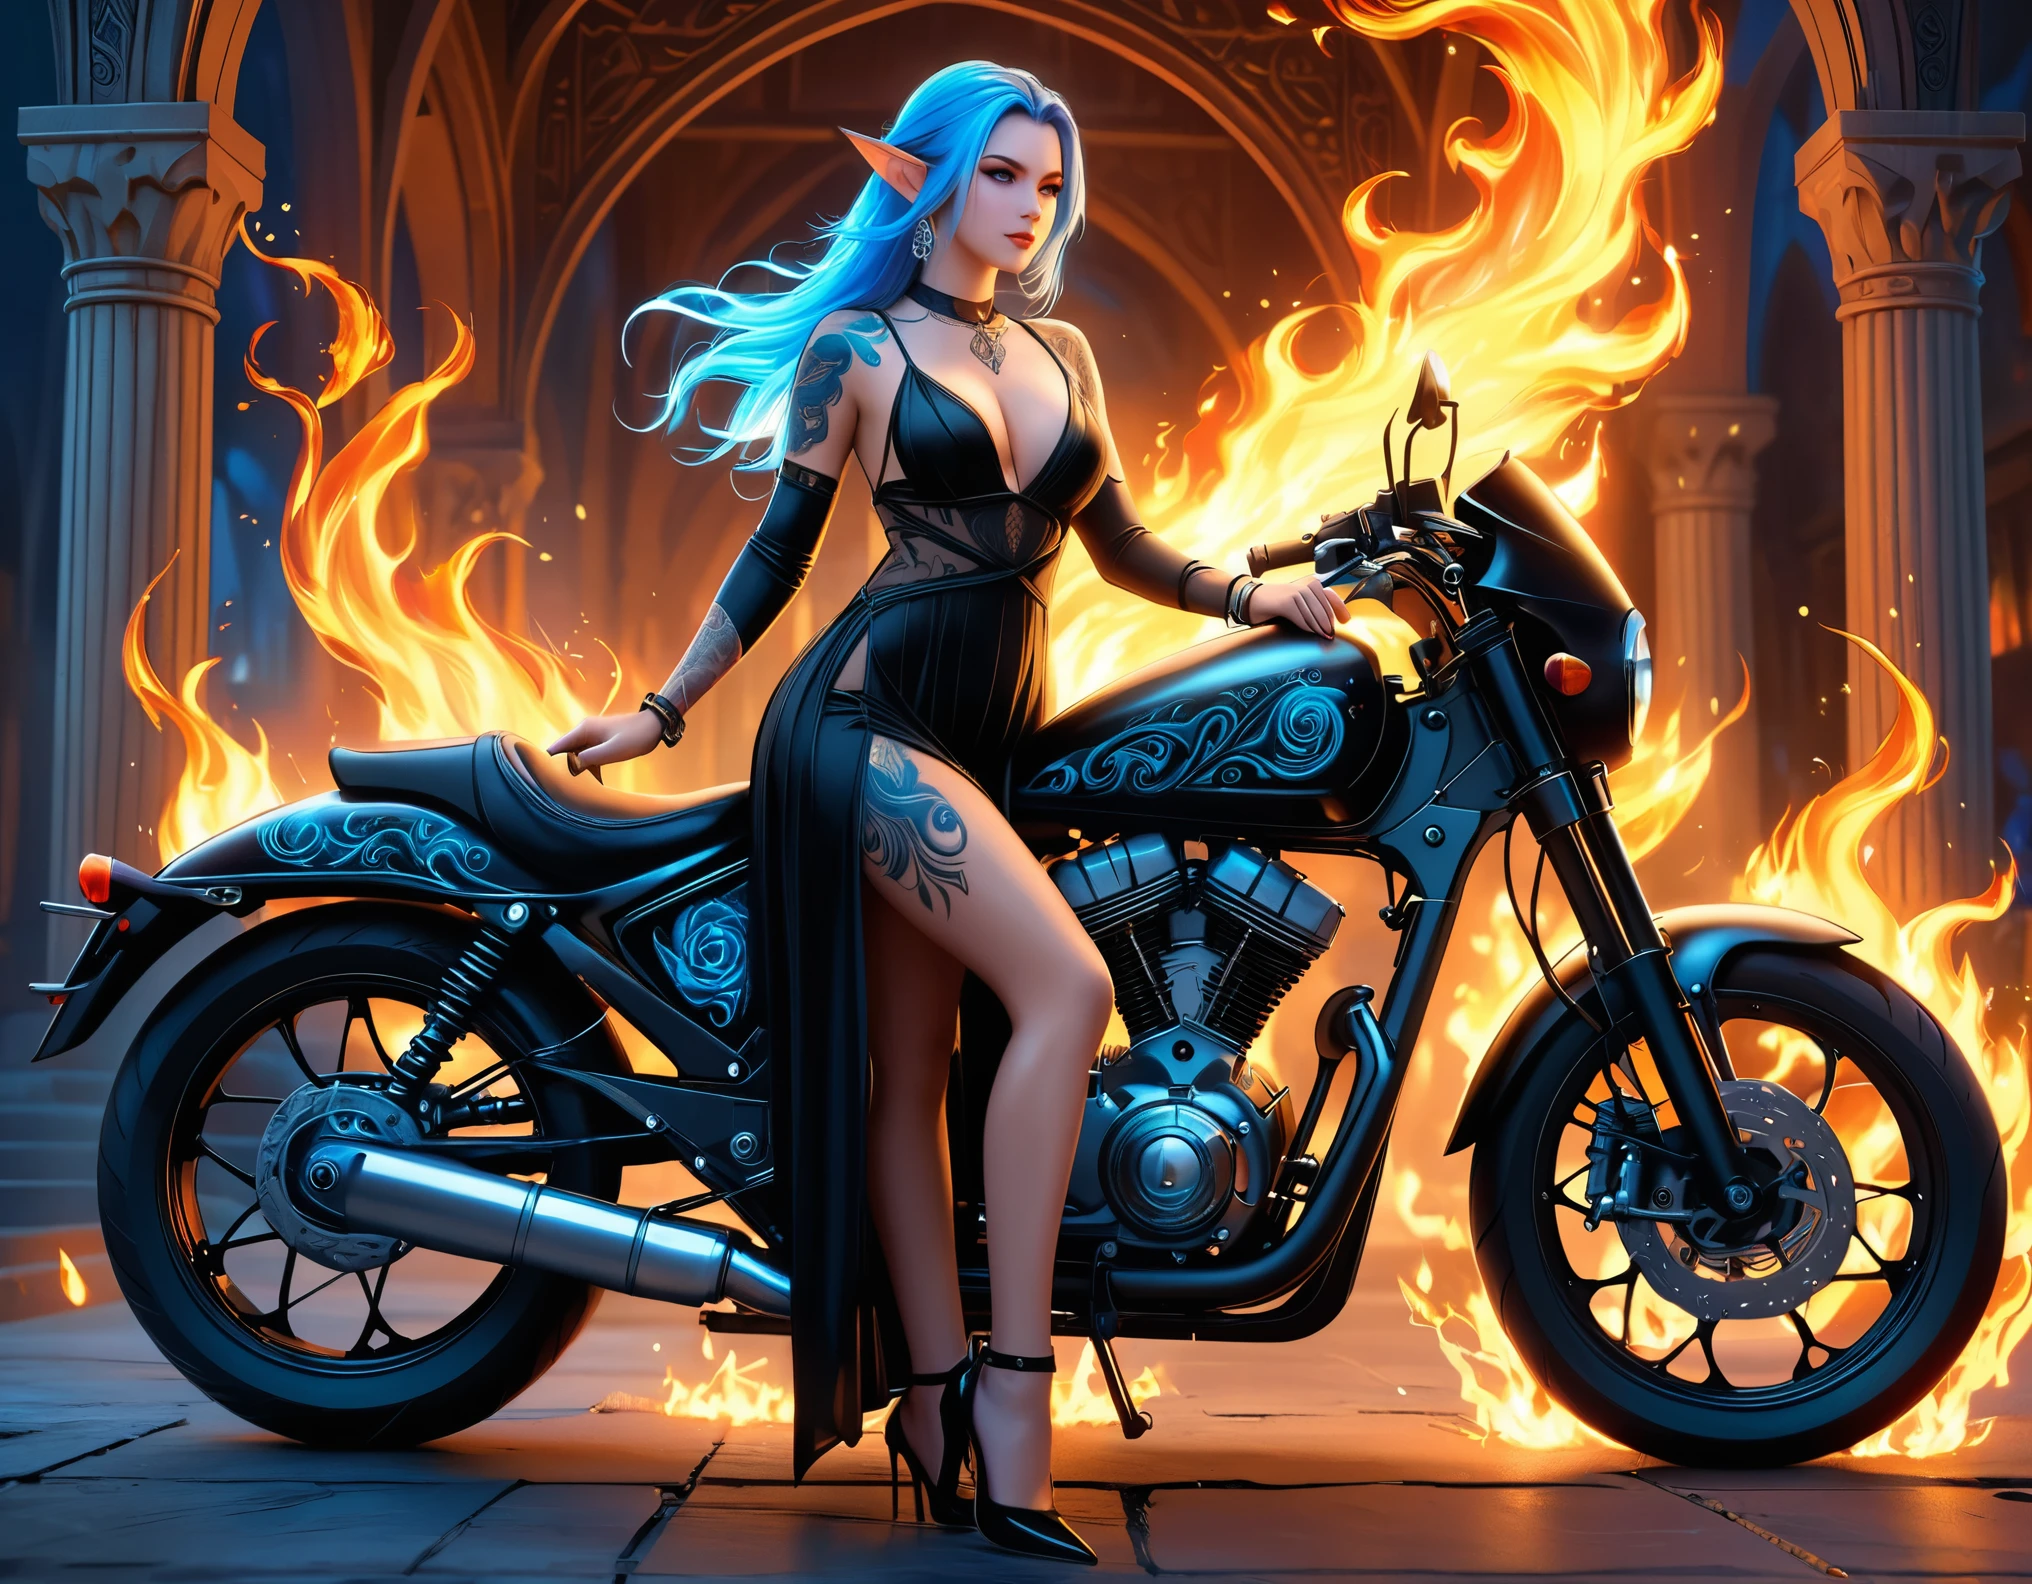 عربي, Dark فن الخيال, فن الخيال, الكونست القوطي, صورة لقزم موشوم بجانب دراجتها النارية (تحفة, أفضل تفصيلا, فائقة التفاصيل: 1.5)  الوشم على قيد الحياة, التفاصيل المعقدة تنبض بالحياة من الحبر, GlowingRunesAI_بلاس_أزرق, ((النار تحيط بالدراجة النارية: 1.5)), ألترافيمينين, ((وجه جميل وحساس)), وجه فائق التفاصيل, آذان صغيرة مدببة, الزاوية الديناميكية, ((الظهر مرئي: 1.3), ترتدي فستانًا أسود شفافًا, الفستان أنيق, بطلاقة, أسلوب العفريت, أن يتوهج الوشم, لون الشعر الديناميكي, تصفيفة الشعر الديناميكية, تفاصيل عالية, أفضل جودة, 16 ك, [فائقة التفاصيلed], تحفة, أفضل جودة, (التفاصيل للغاية), الزاوية الديناميكية, لقطة لكامل الجسم, مهتم, الاشتراك في, الرسم الرقمي